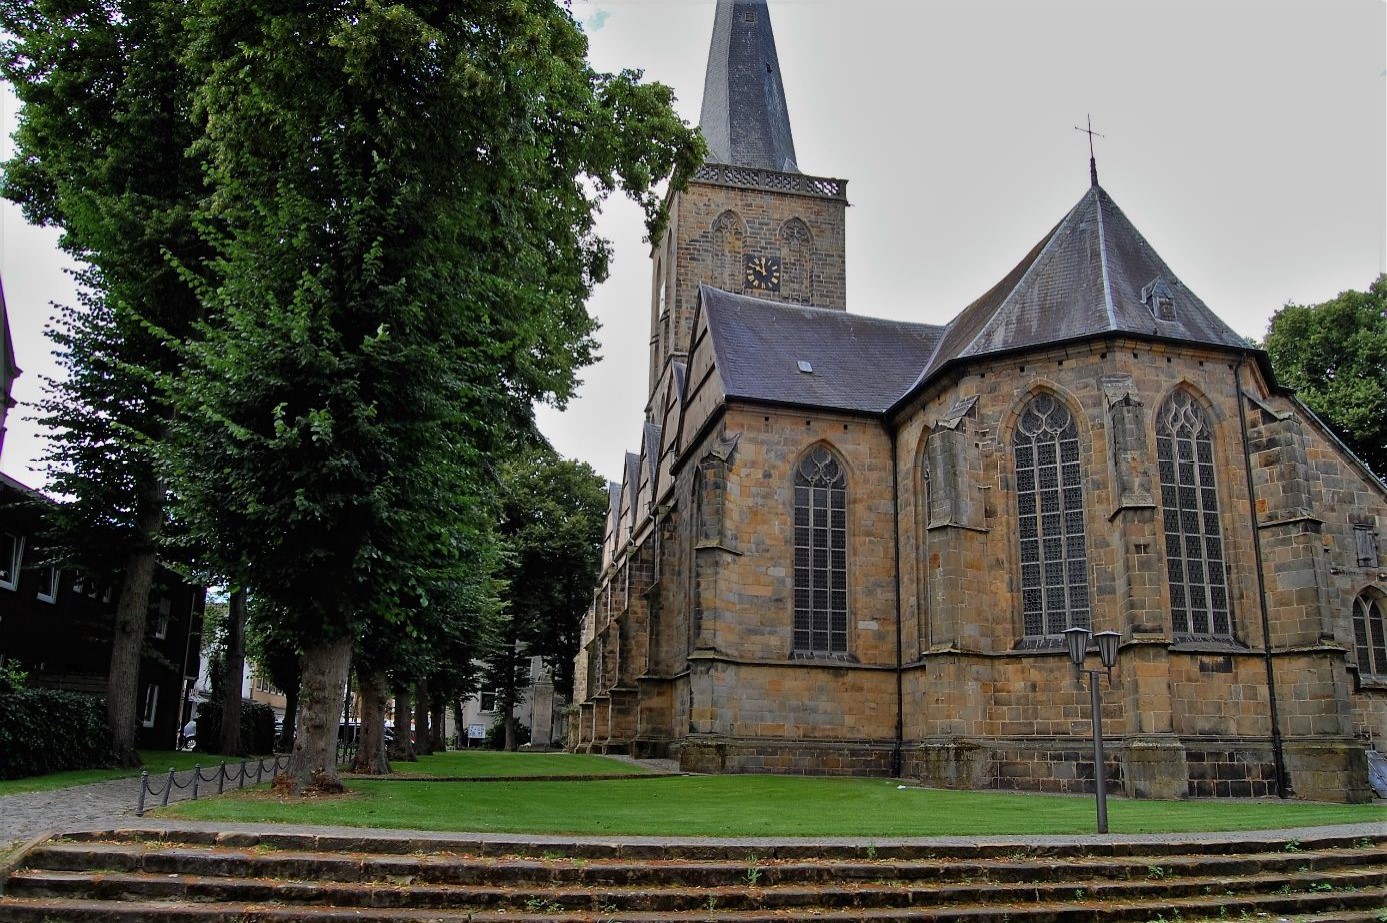 Evangelisch-reformierte Kirche van Schüttorf: In deze gemeente overleed hij. Naar alle waarschijnlijkheid is hij ergens buiten de kerk begraven. Grafsteen is zeker niet meer aanwezig.